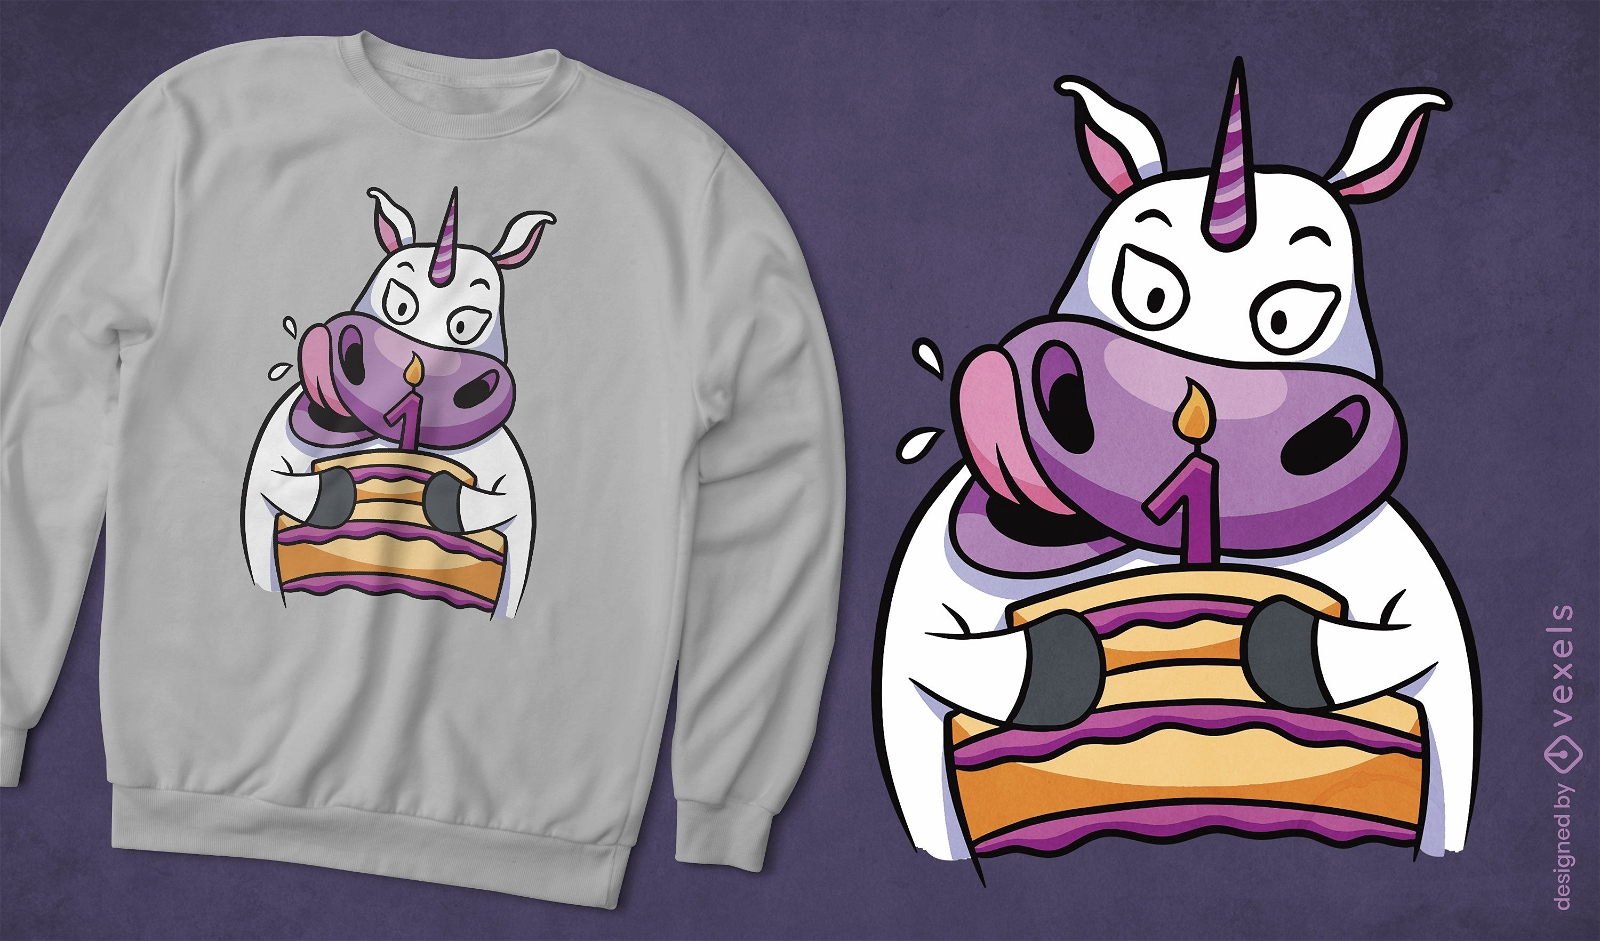 Unicorn and birthday cake t-shirt design